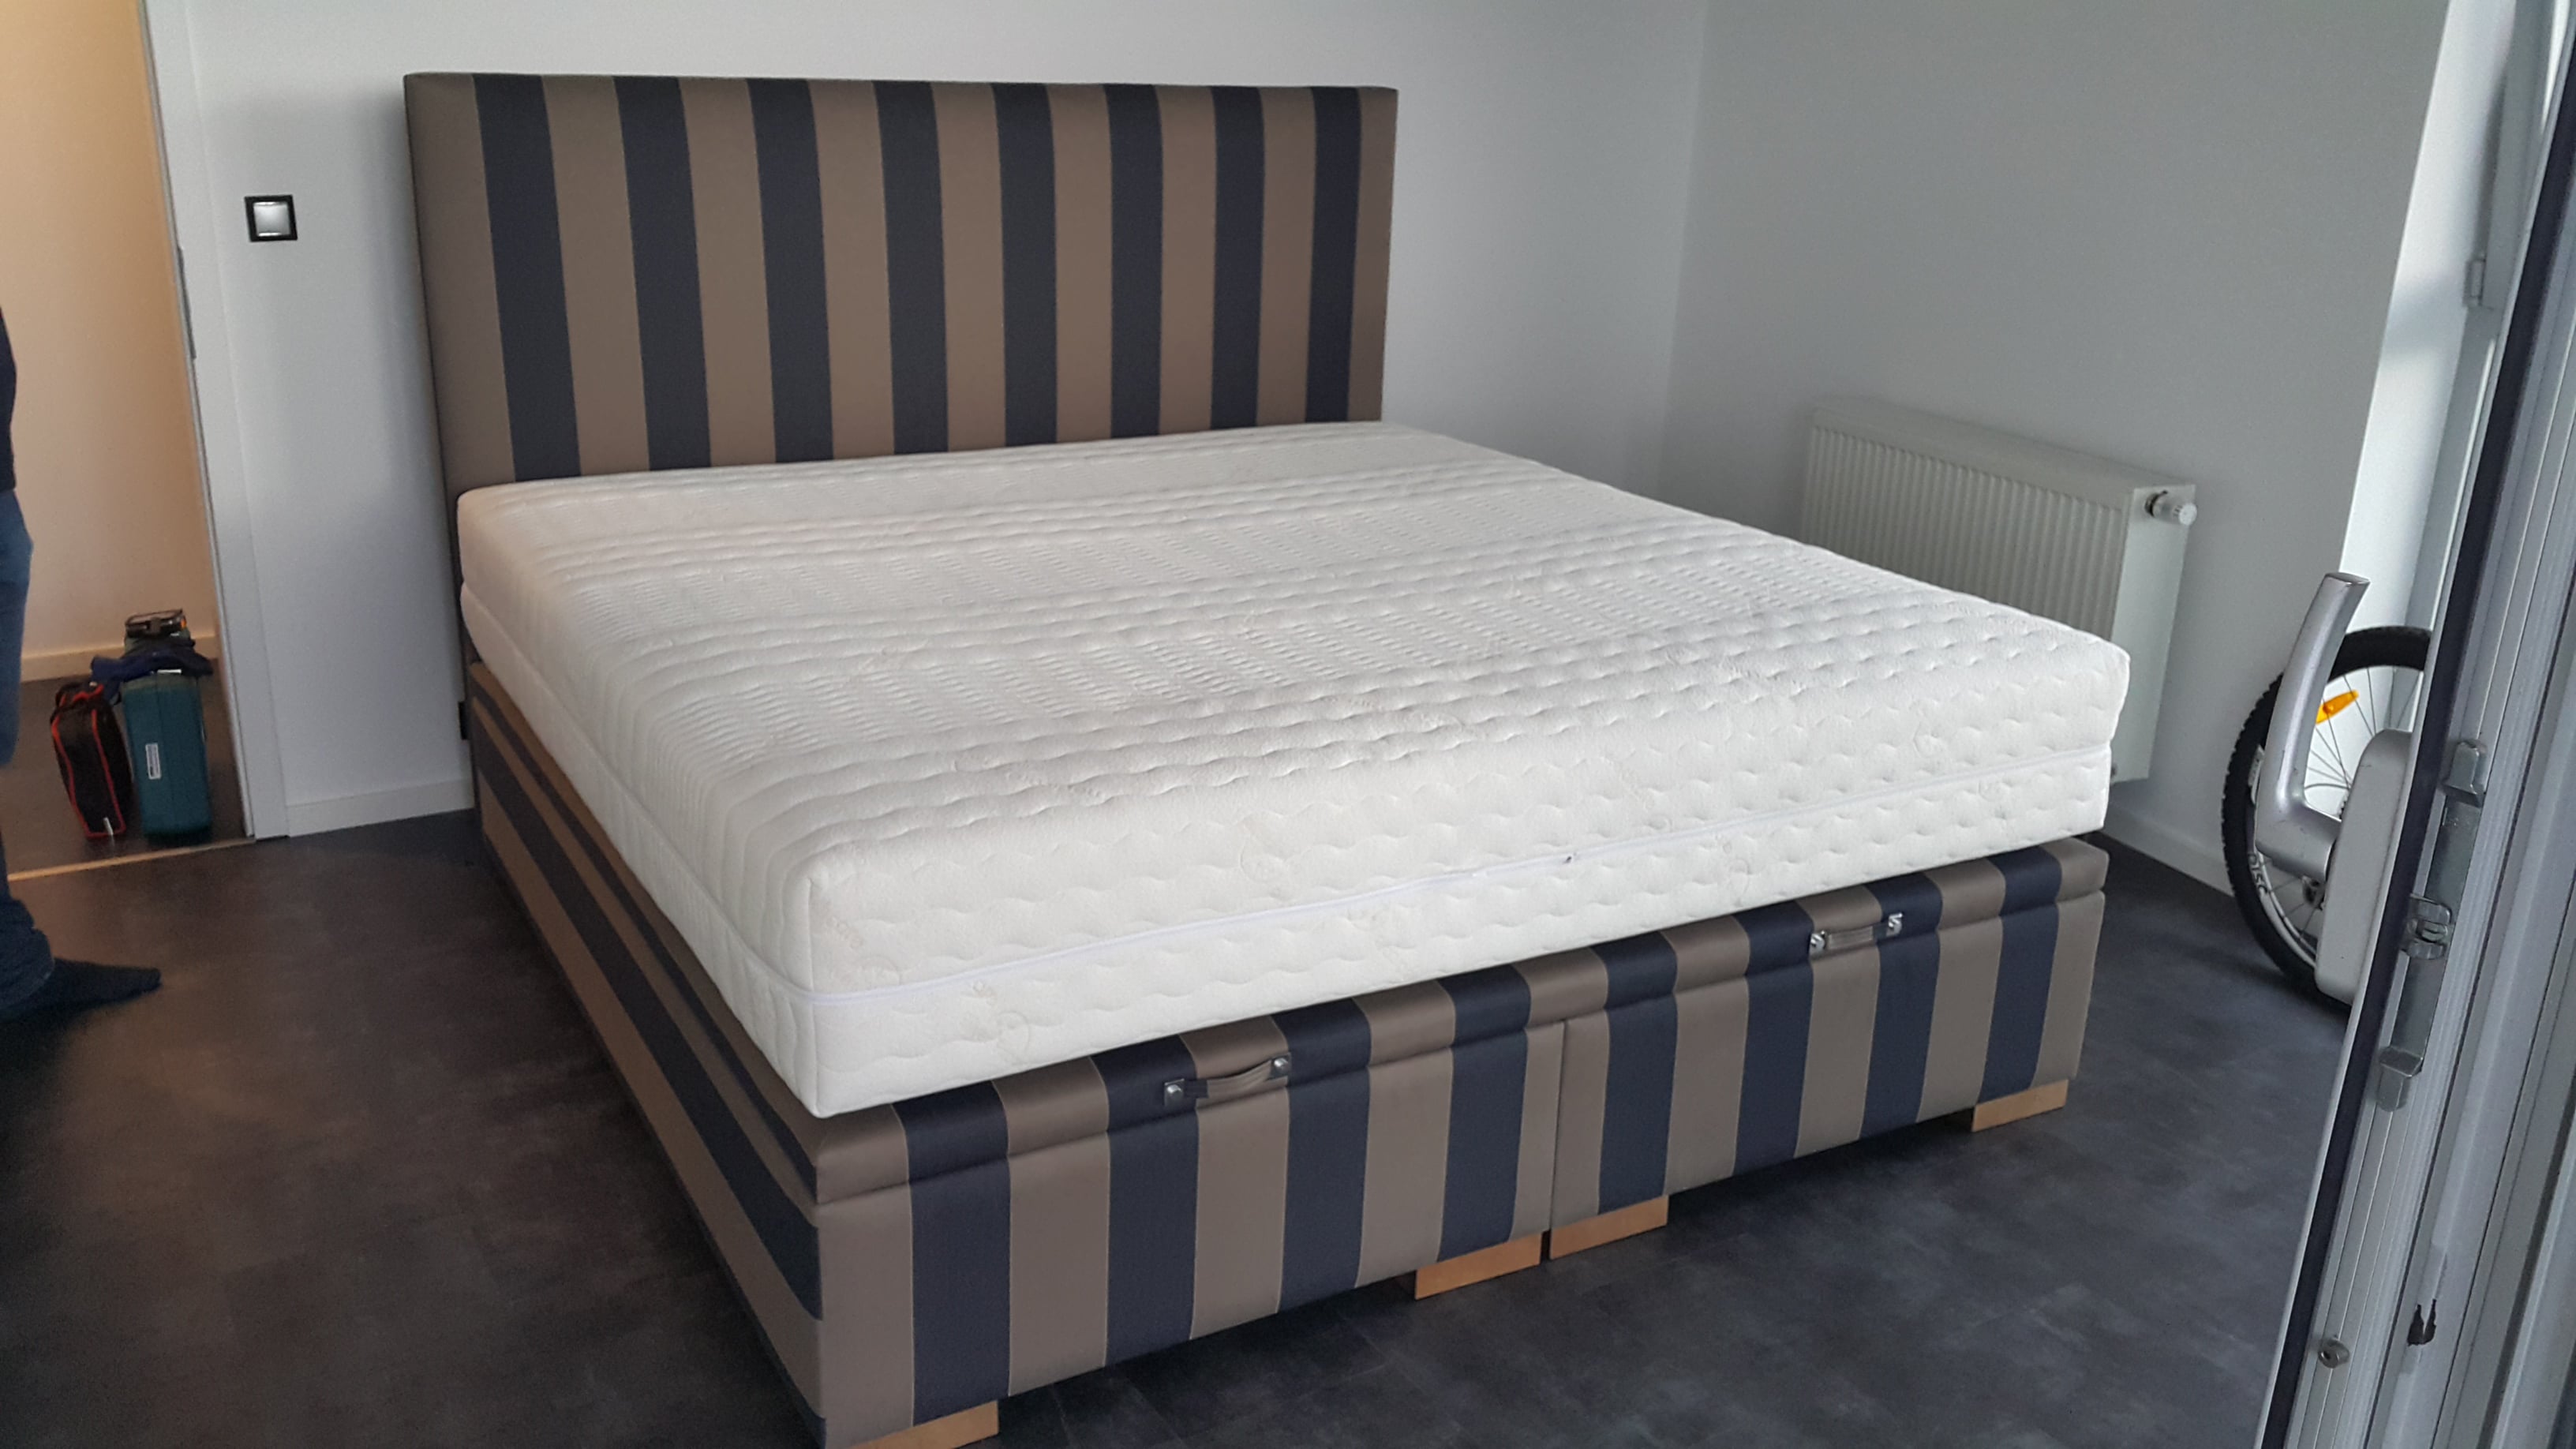 Čalúnená posteľ Klasik Lux vo verzii springbox postele + úložný priestor.Rozmer ložnej plochy 200x200cm